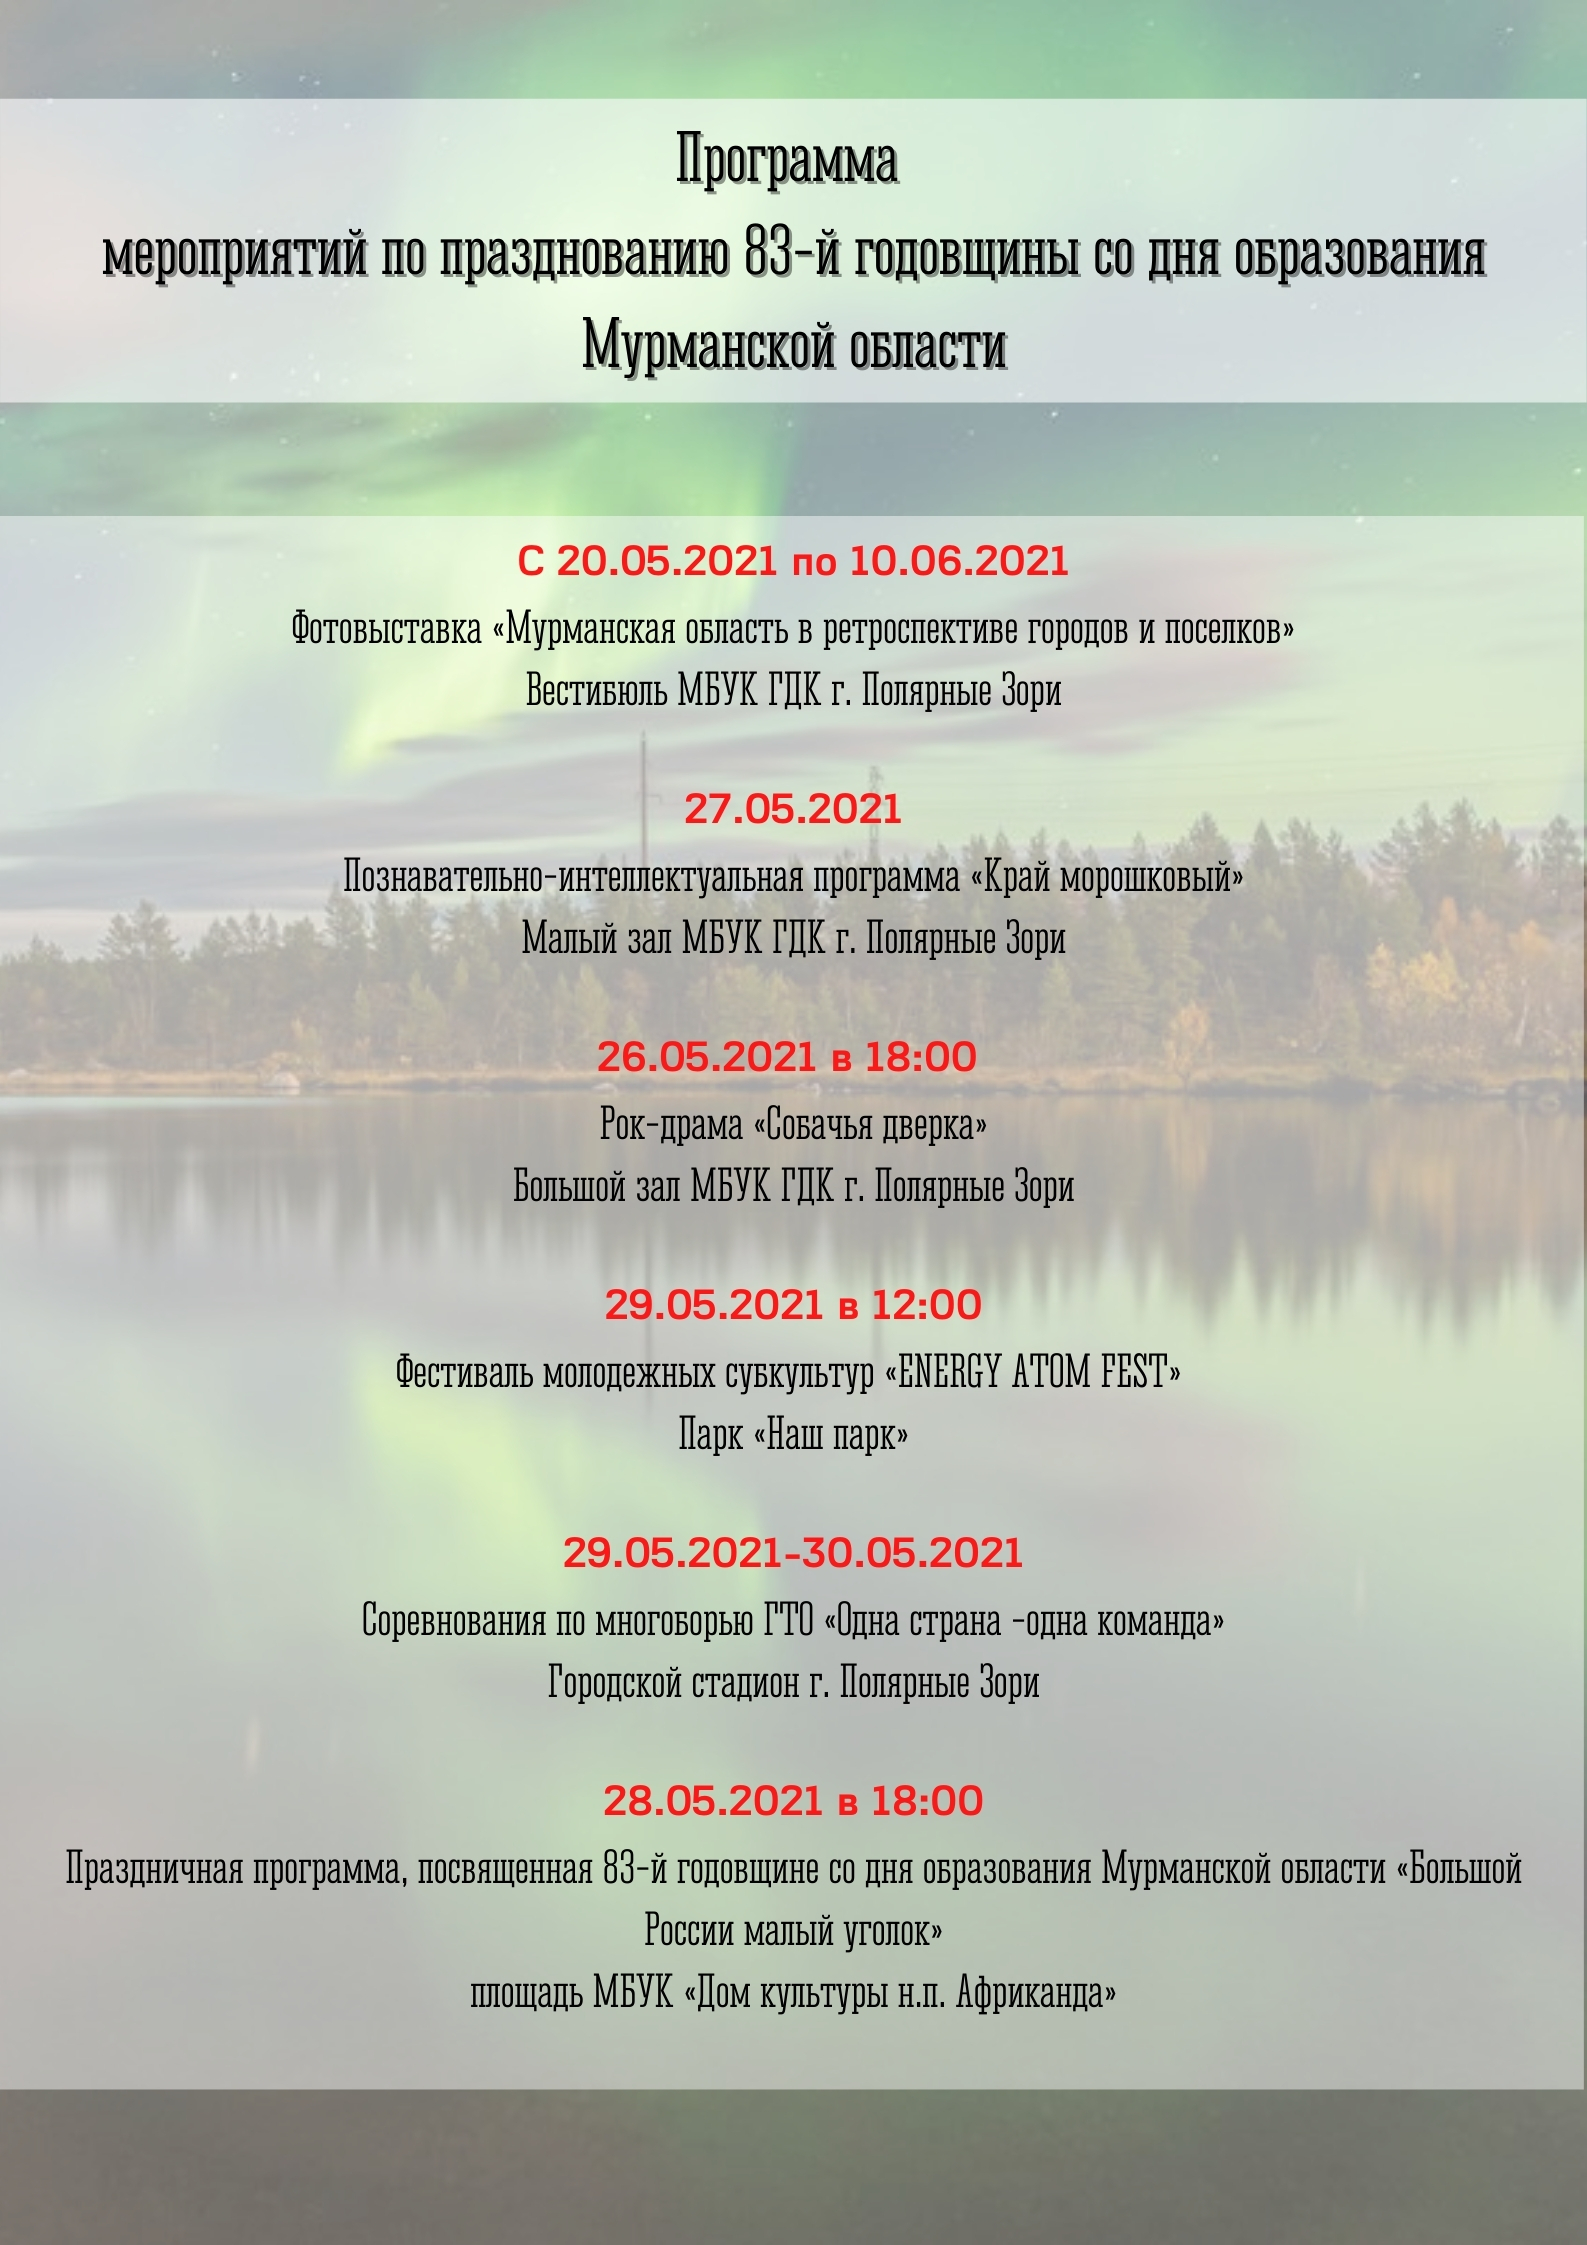 Программа мероприятий по празднованию 83 й годовщины со дня образования Мурманской области1